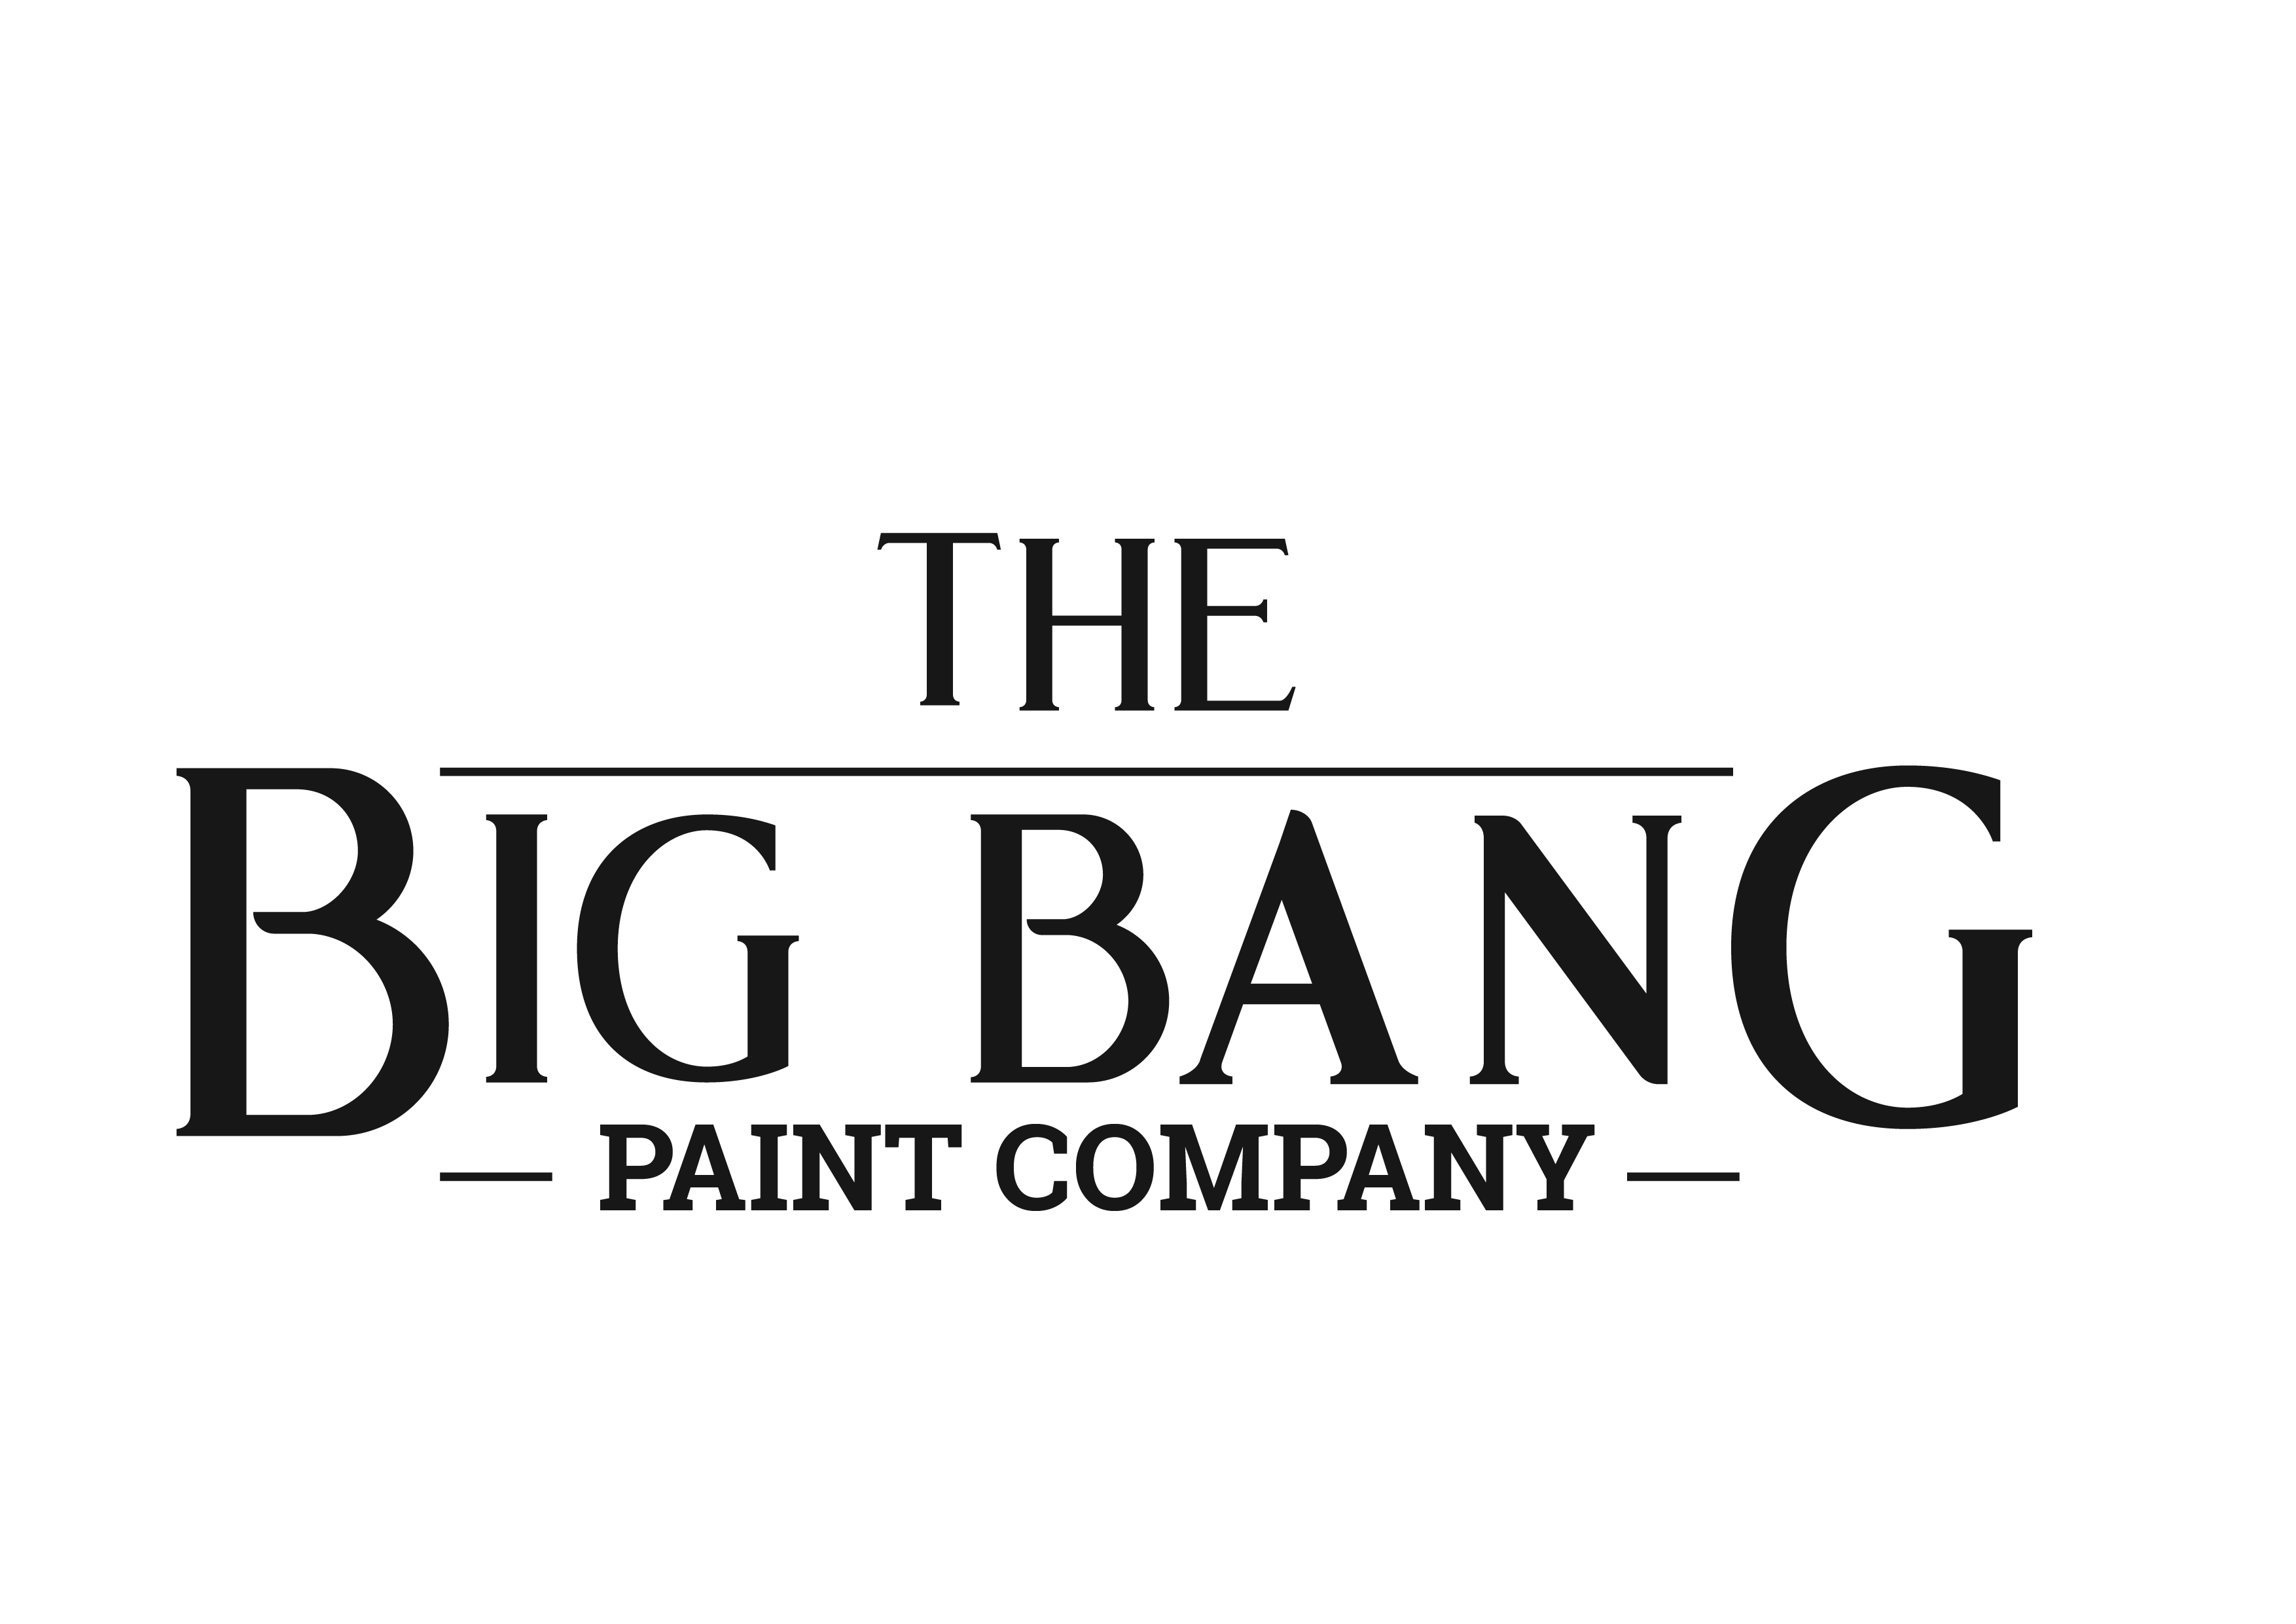 The Big Bang Paint Company